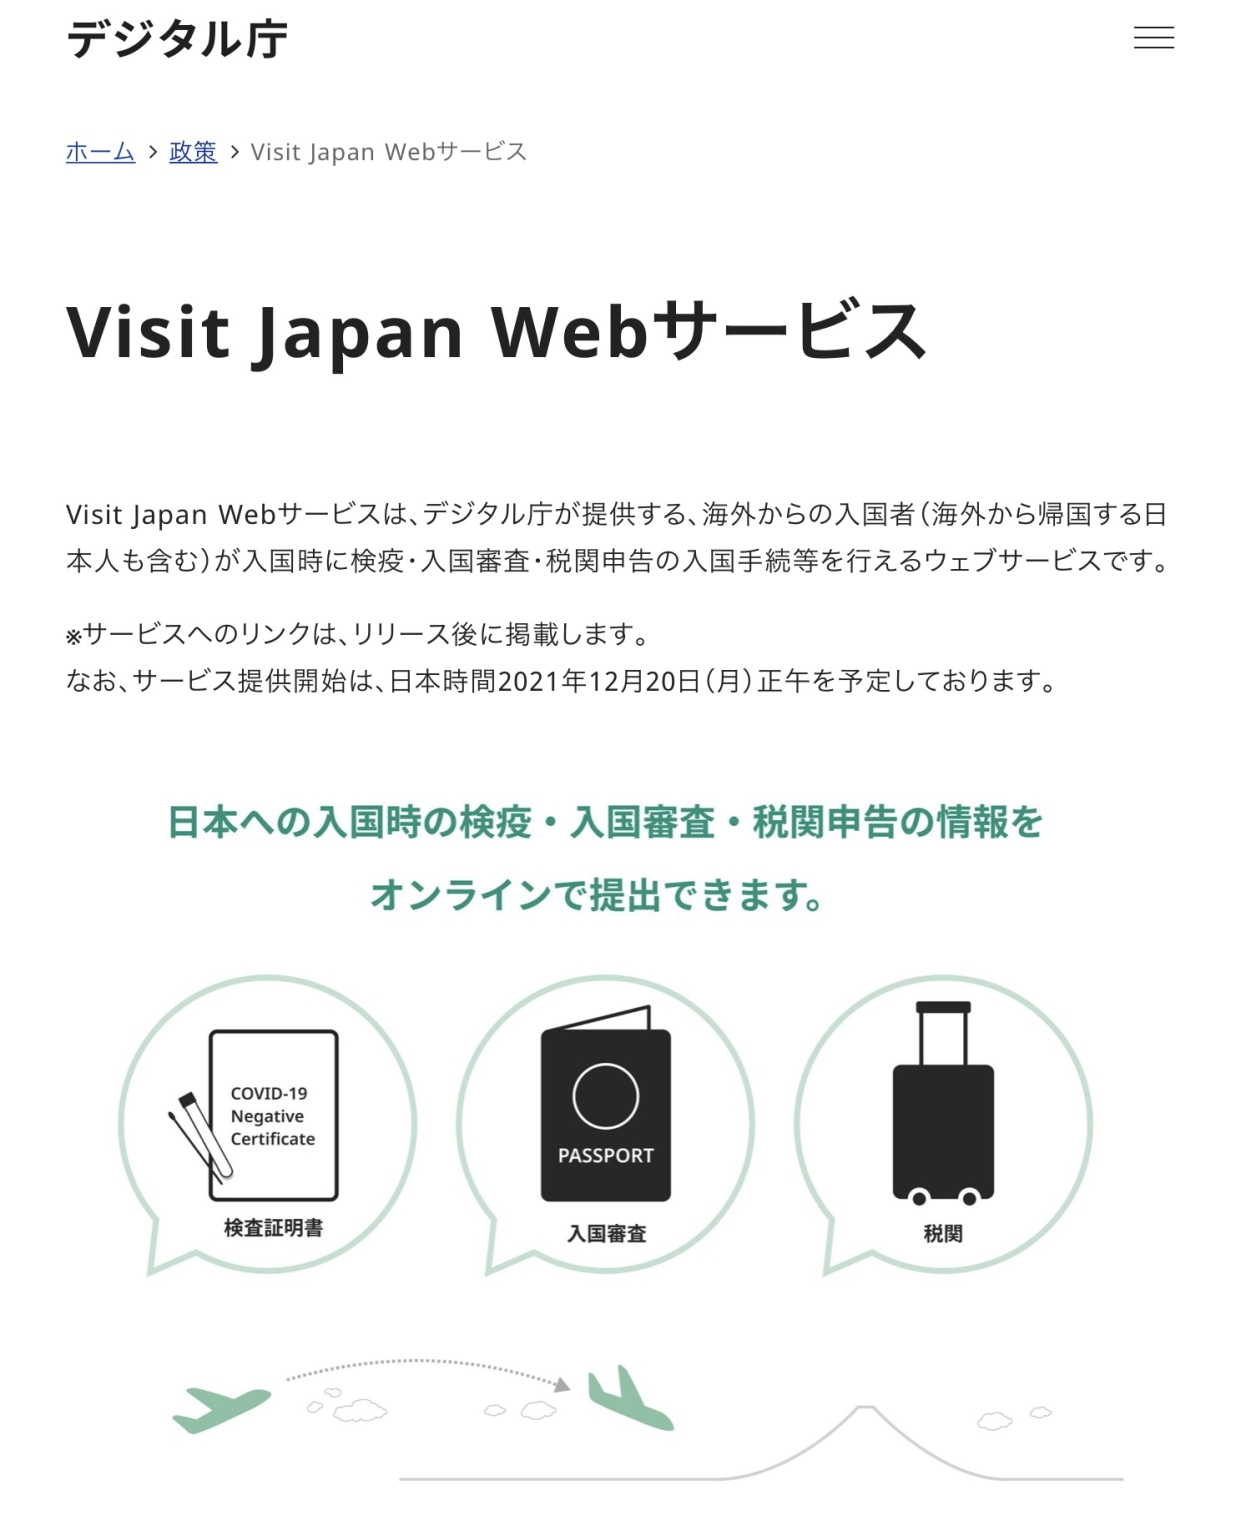 visit japan web thai